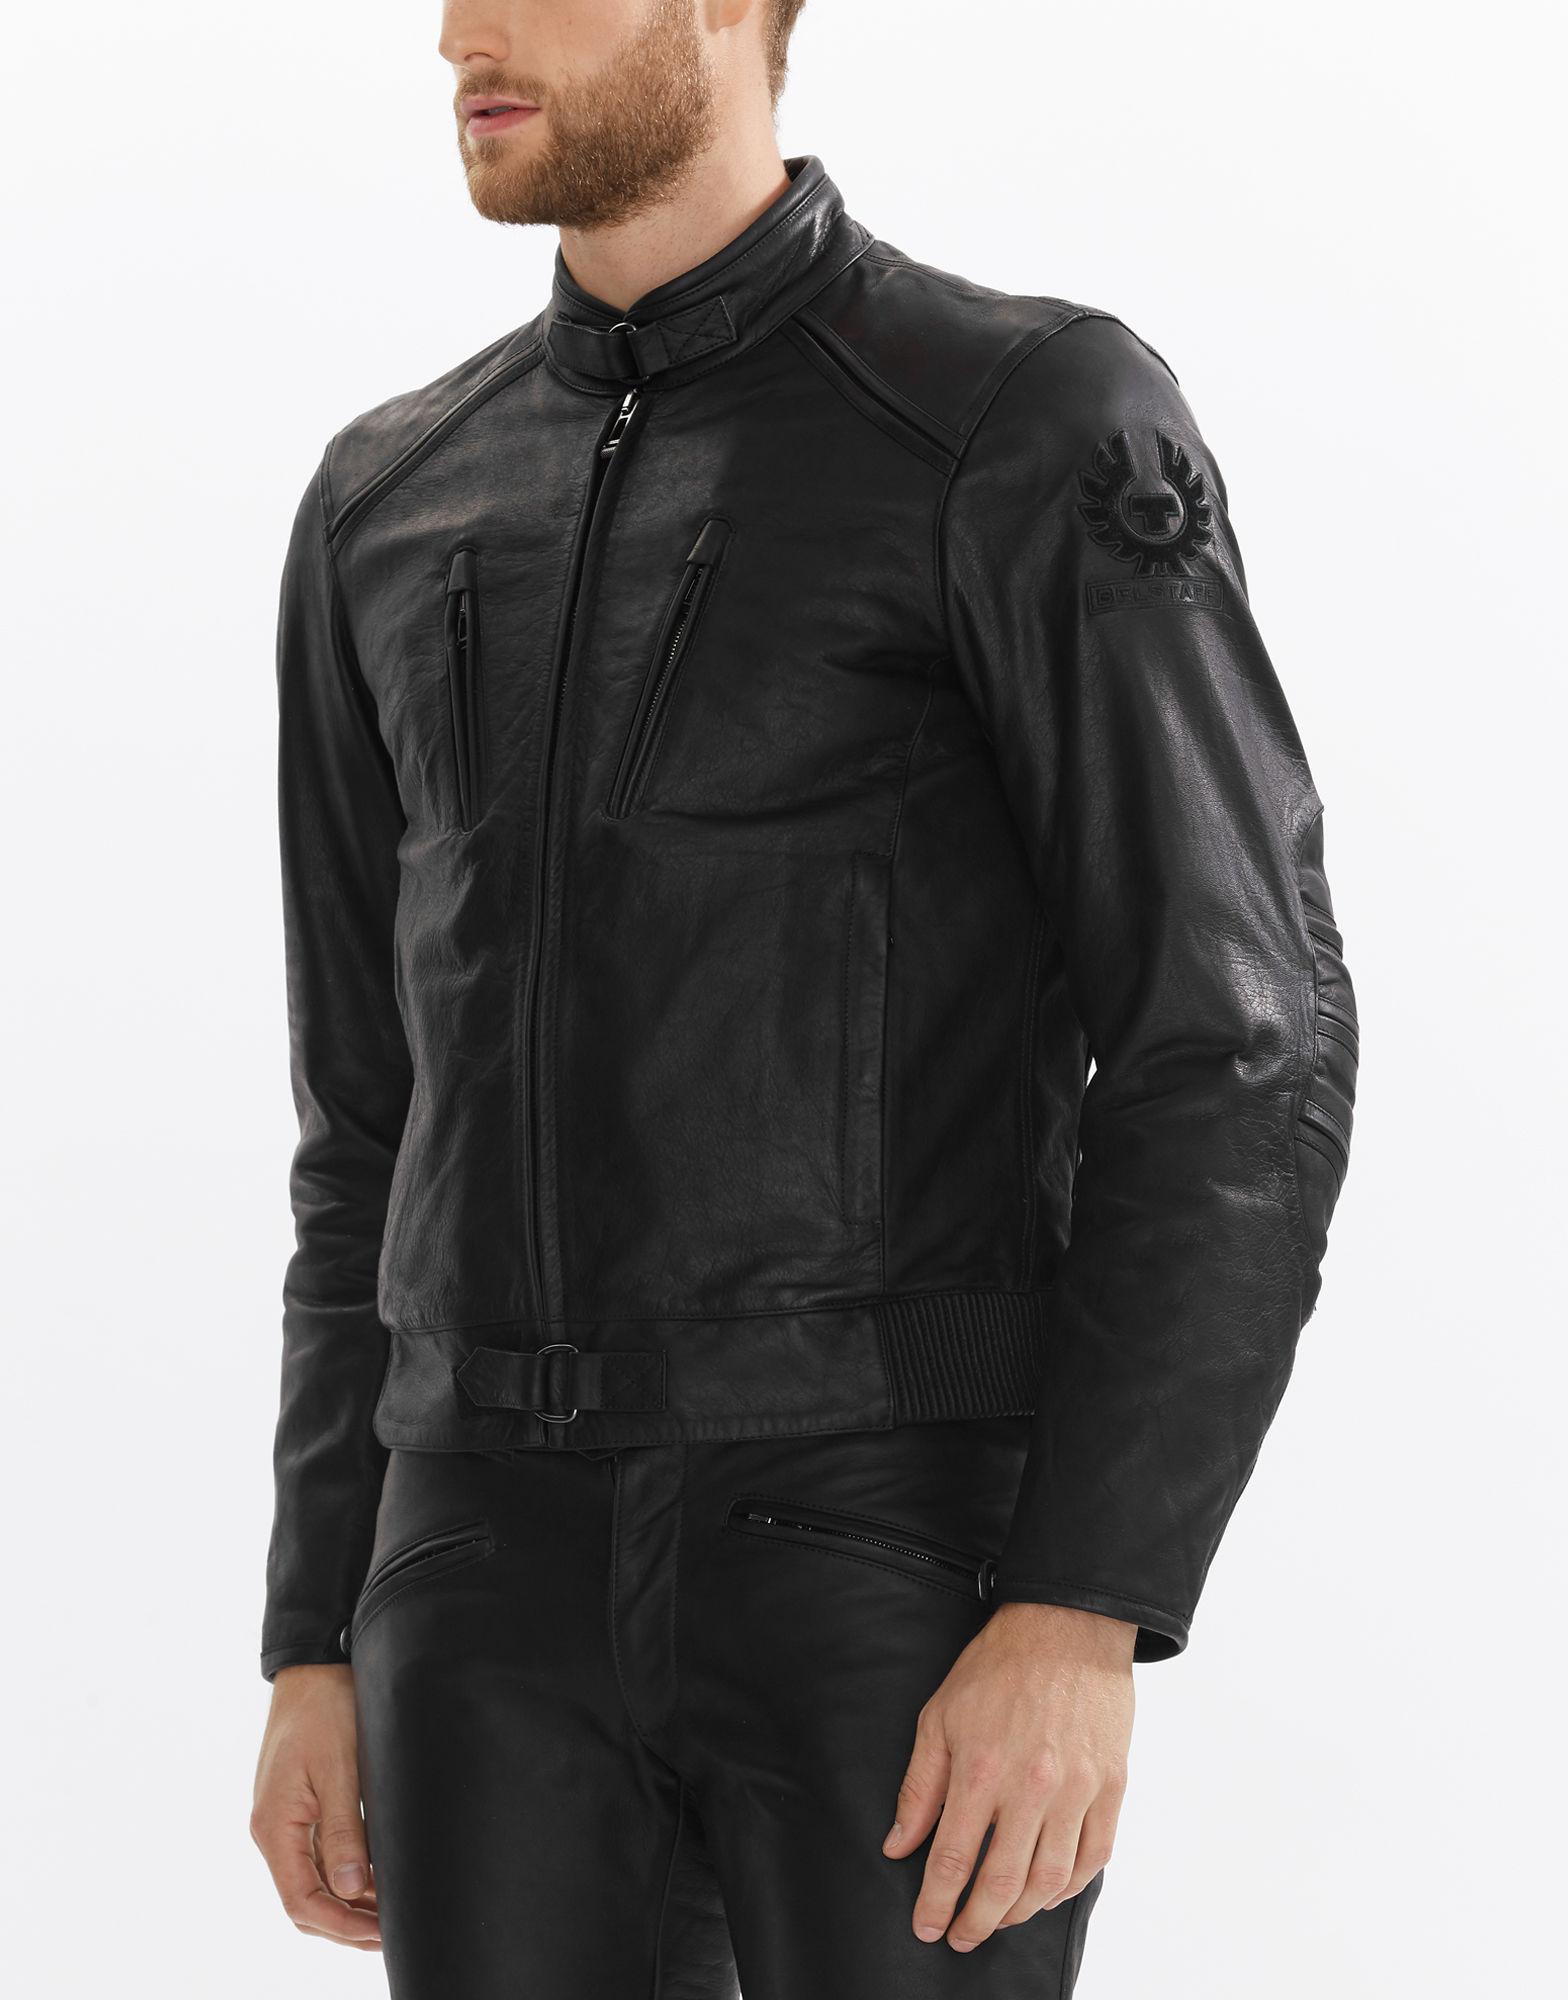 Belstaff Leather Lavant Blouson in Black for Men - Lyst